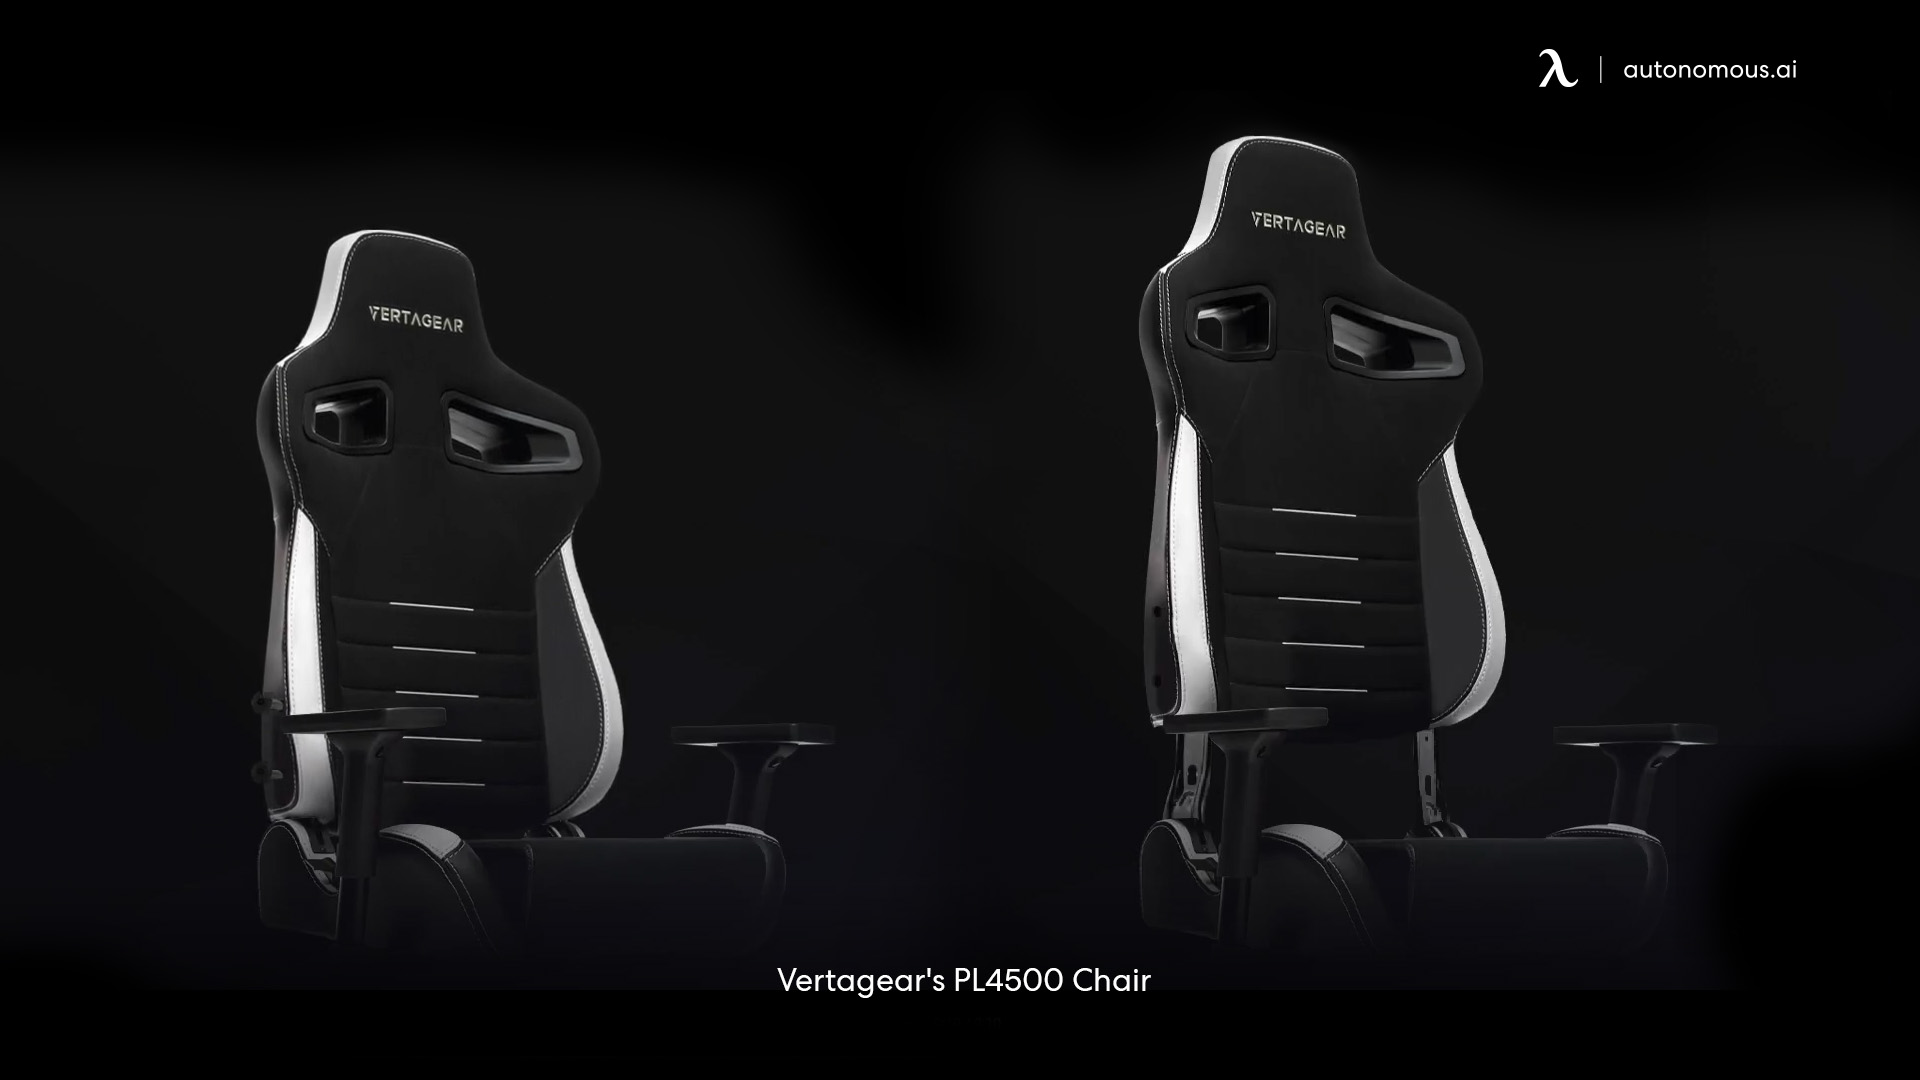 Vertagear's PL4500 Chair